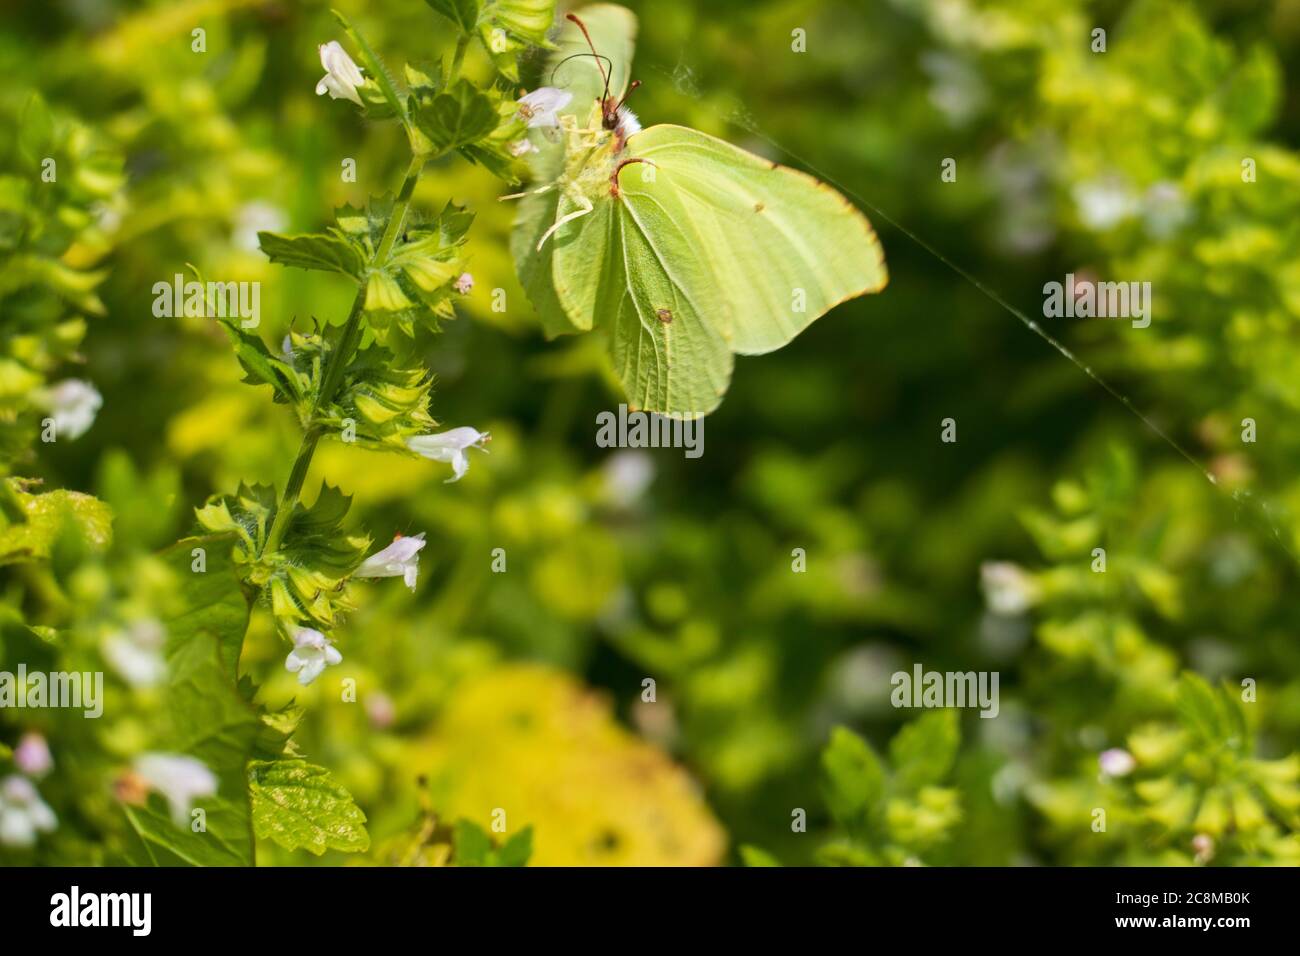 Zitronenfalter Schmetterling an einer Mariennessel Andorn Pflanze Stock Photo